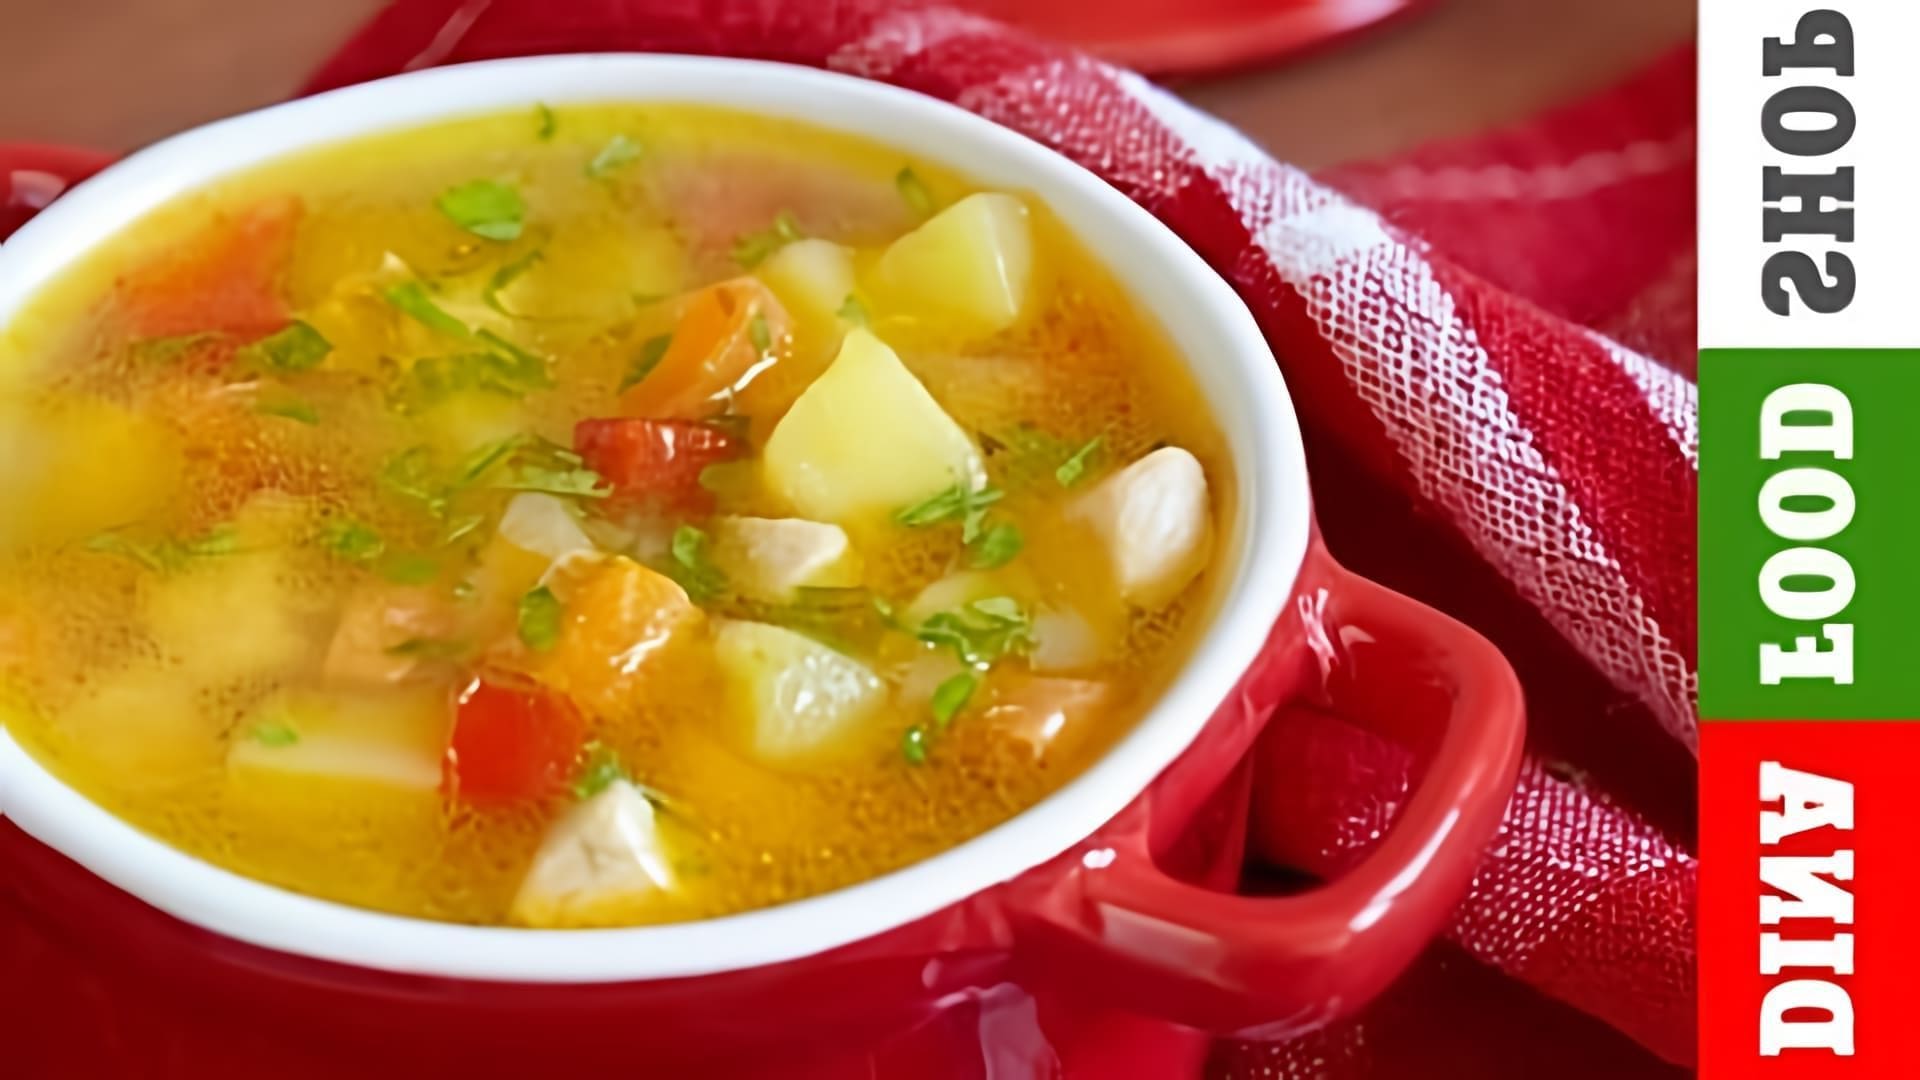 Суп из кабачков - это вкусное и полезное блюдо, которое можно приготовить в домашних условиях